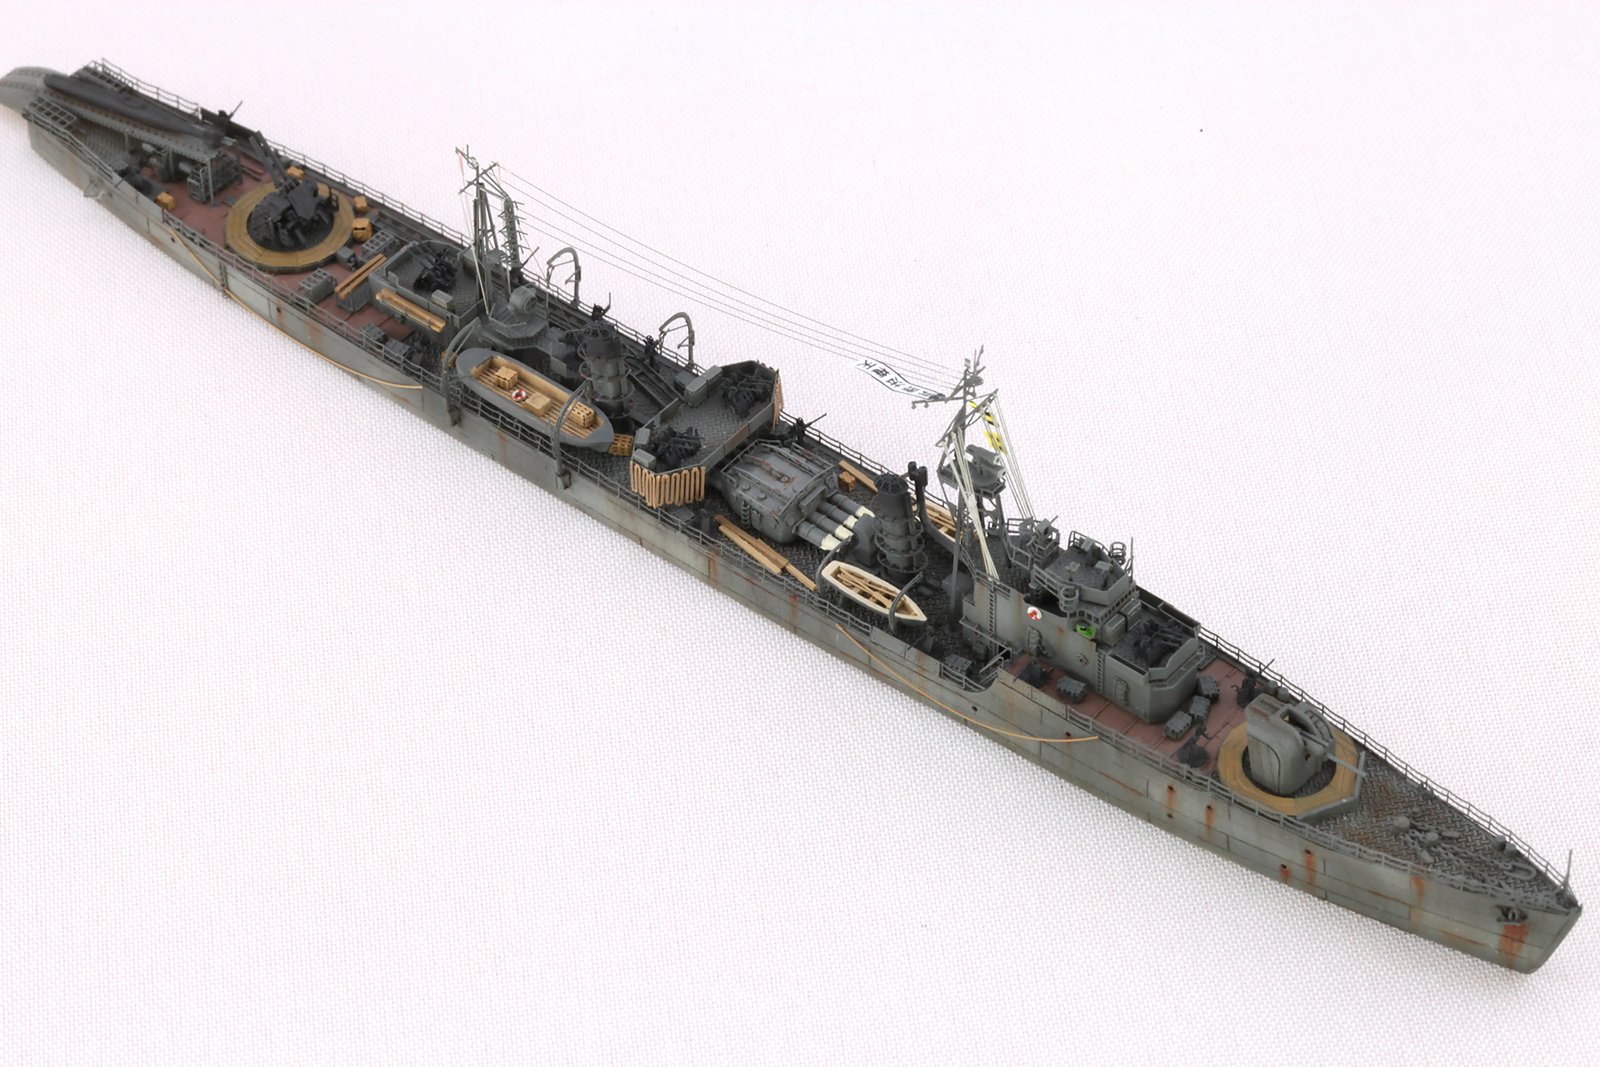 1/700 二战日本海军初樱号驱逐舰升级改造套件(配Pitroad W077/W078) - 点击图像关闭